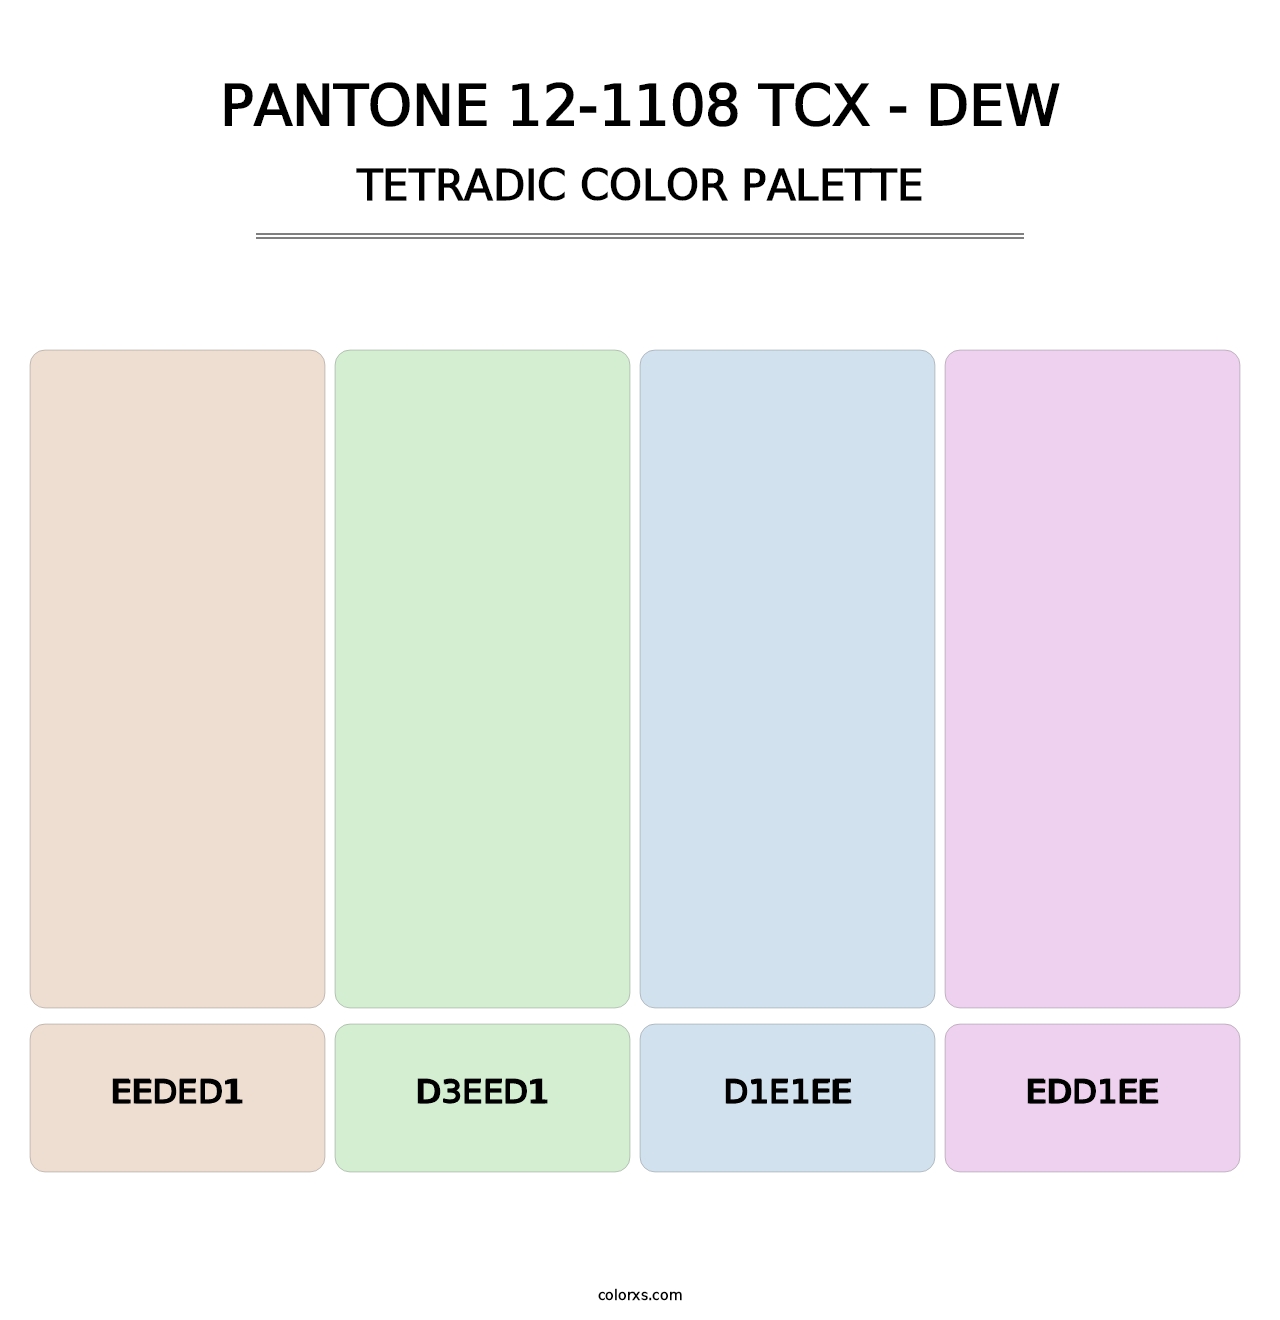 PANTONE 12-1108 TCX - Dew - Tetradic Color Palette